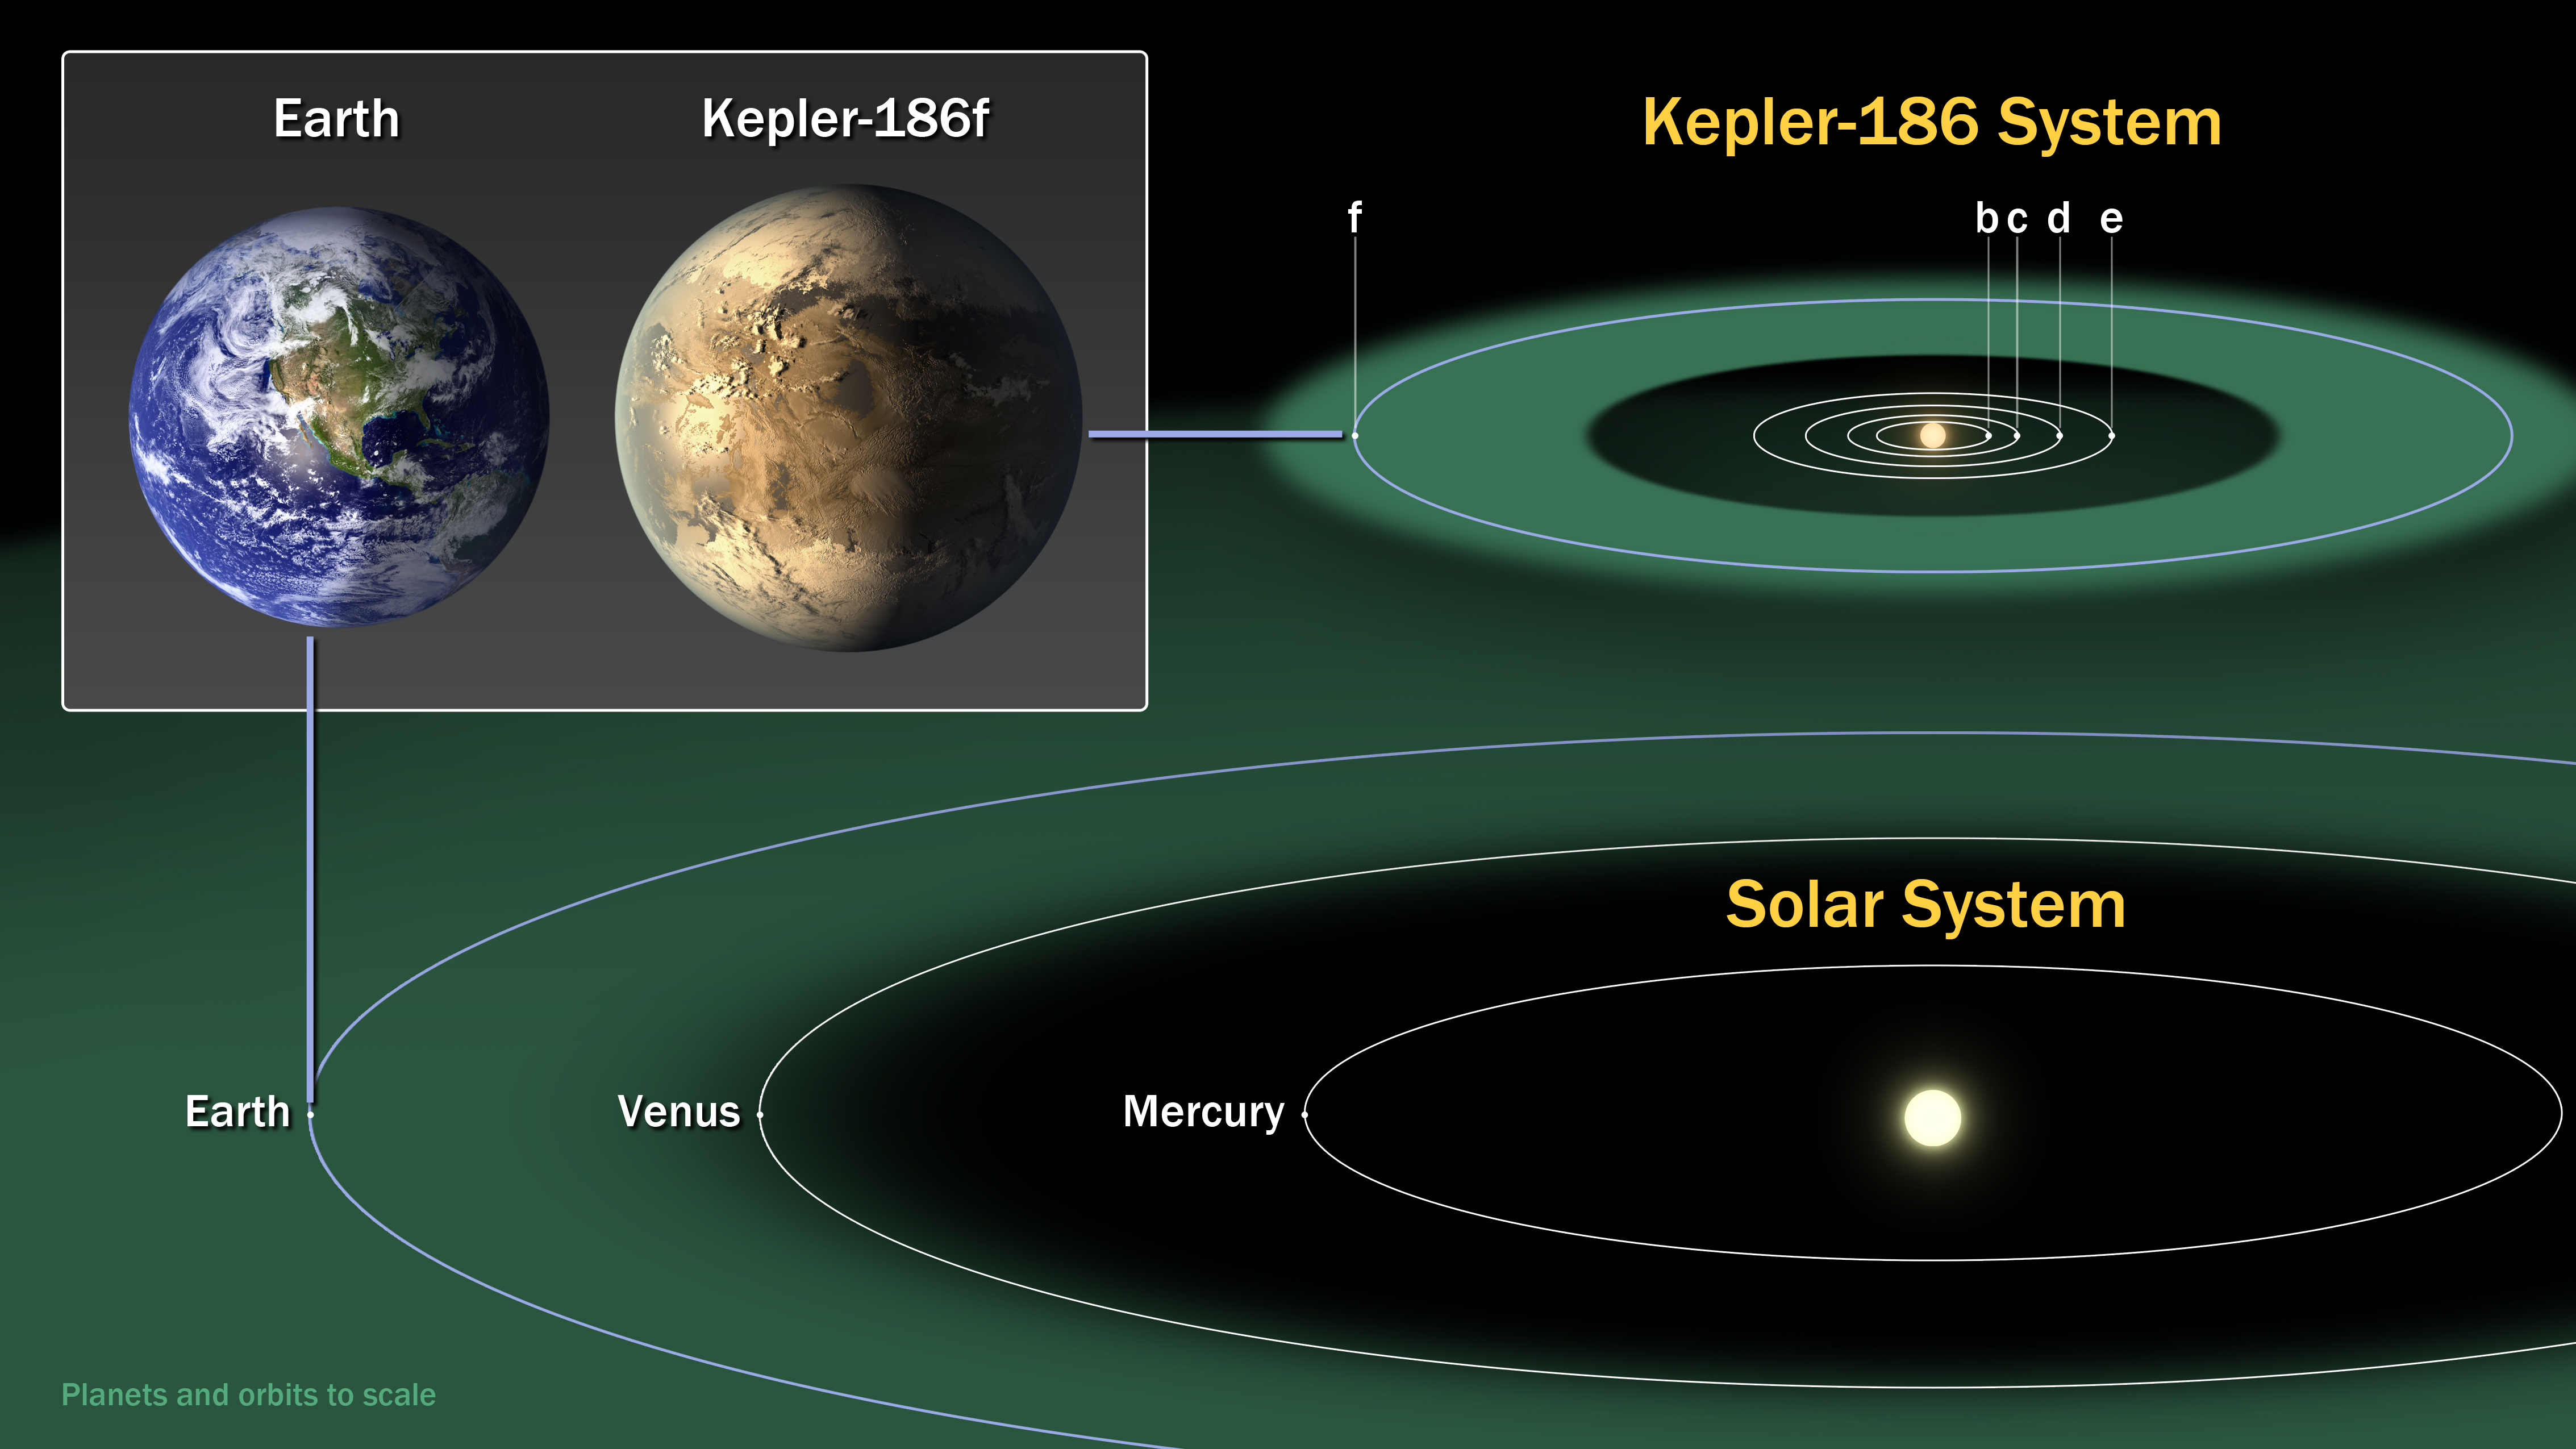 Η Γη και ο πλανήτης «Κέπλερ-186f»